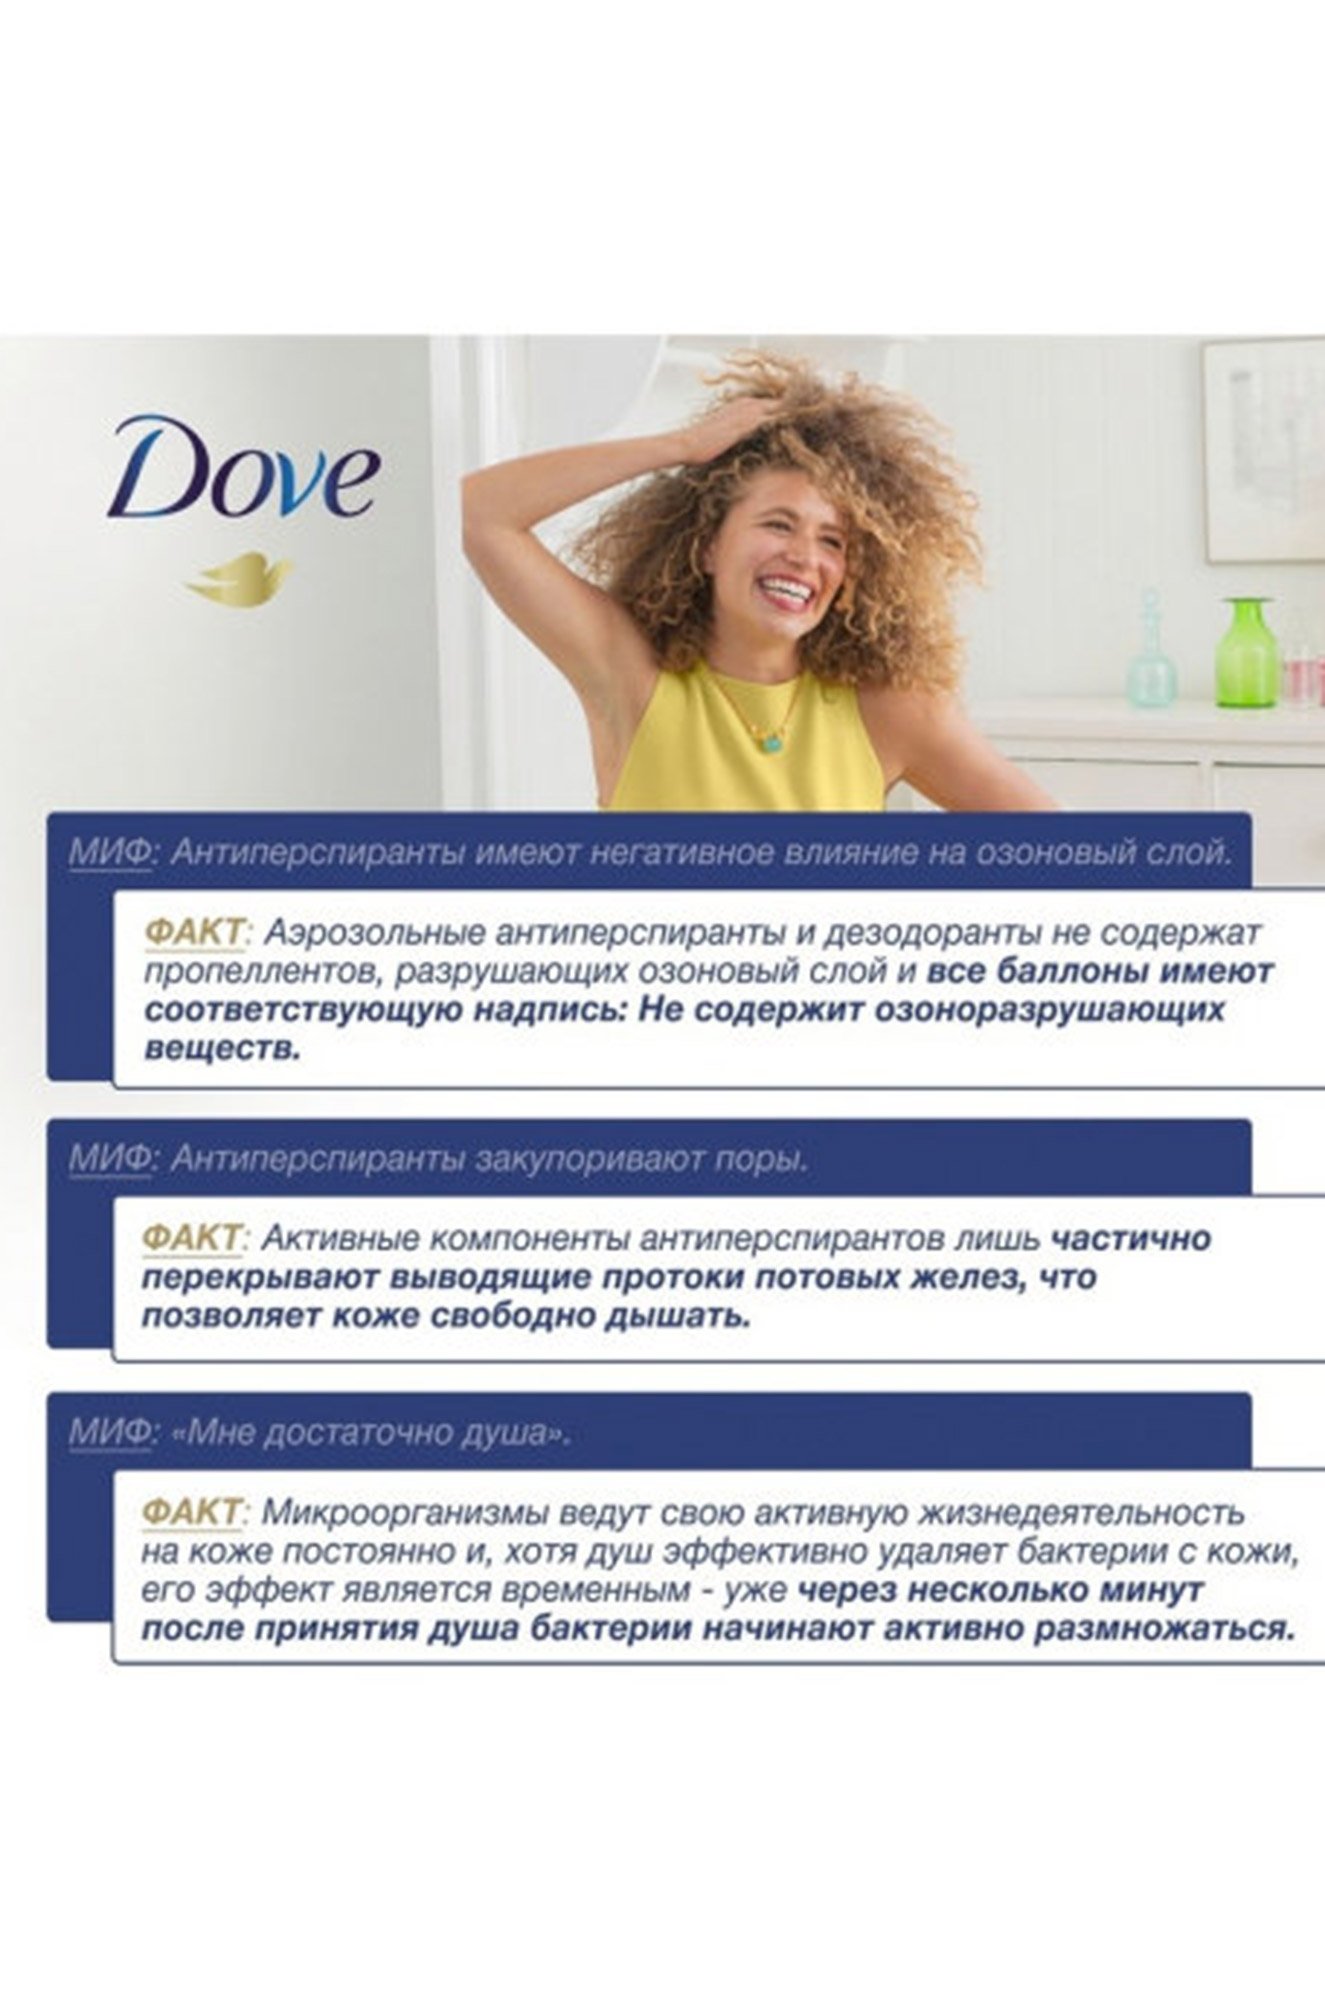 Дезодорант-антиперспирант аэрозоль Бережная забота для чувствительной кожи 150 мл Dove